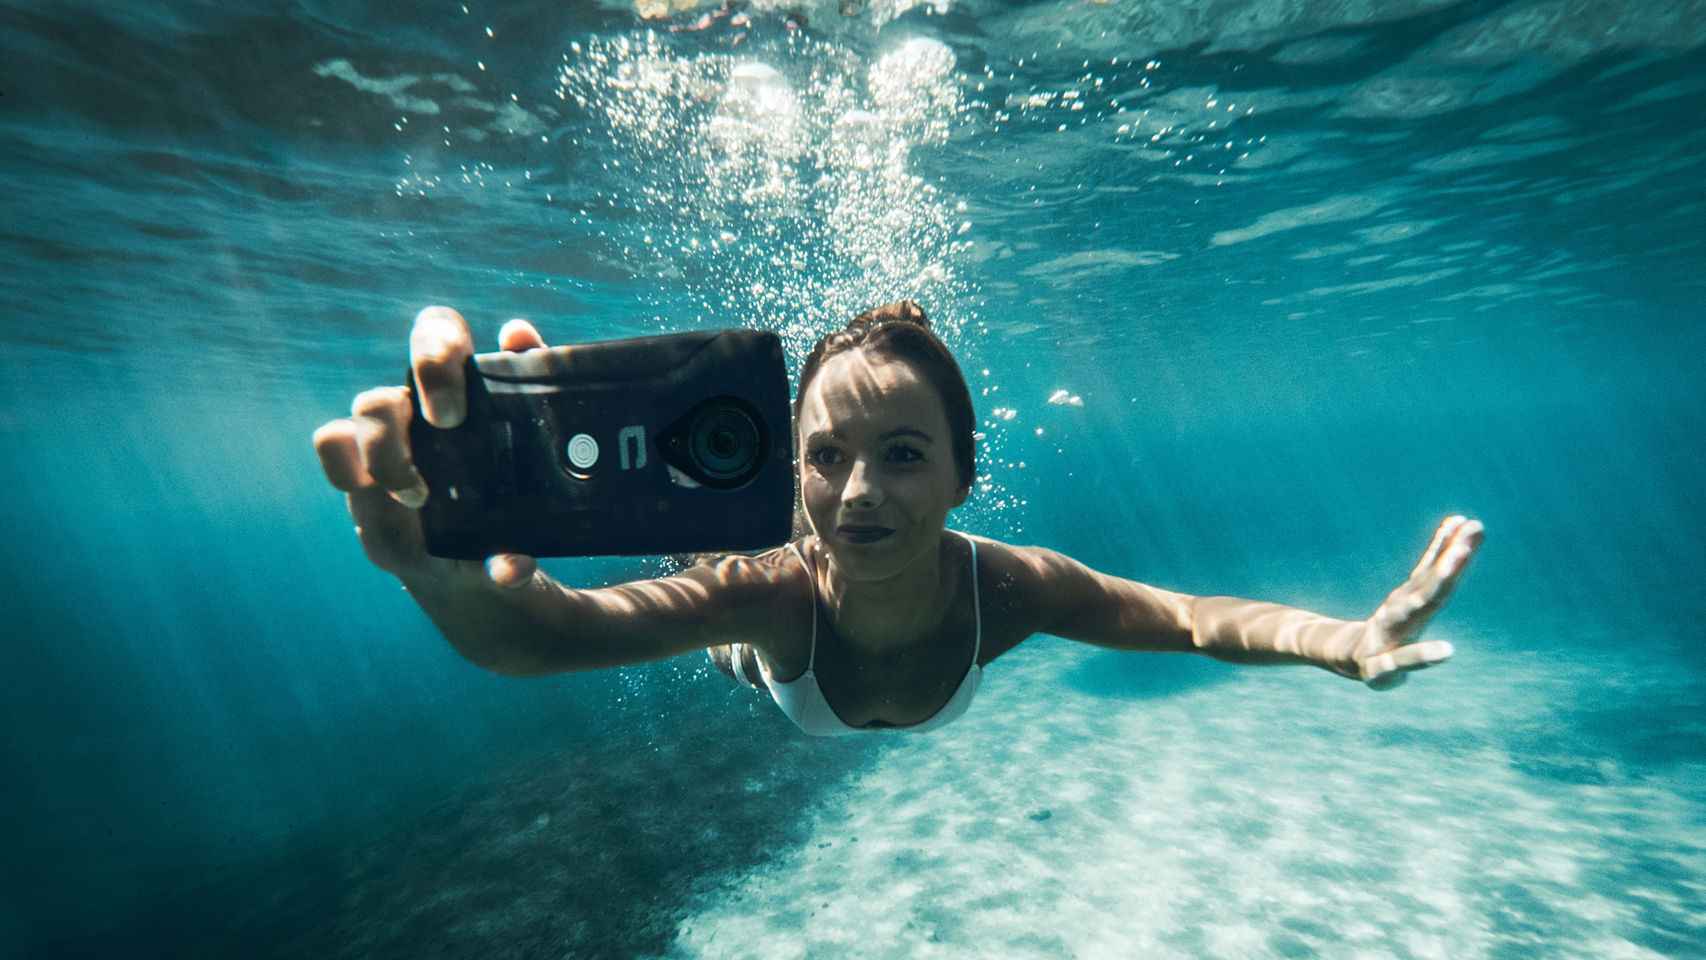 Detectar Volver a disparar provocar Las mejores cámaras de acción para grabar bajo el mar o en la piscina